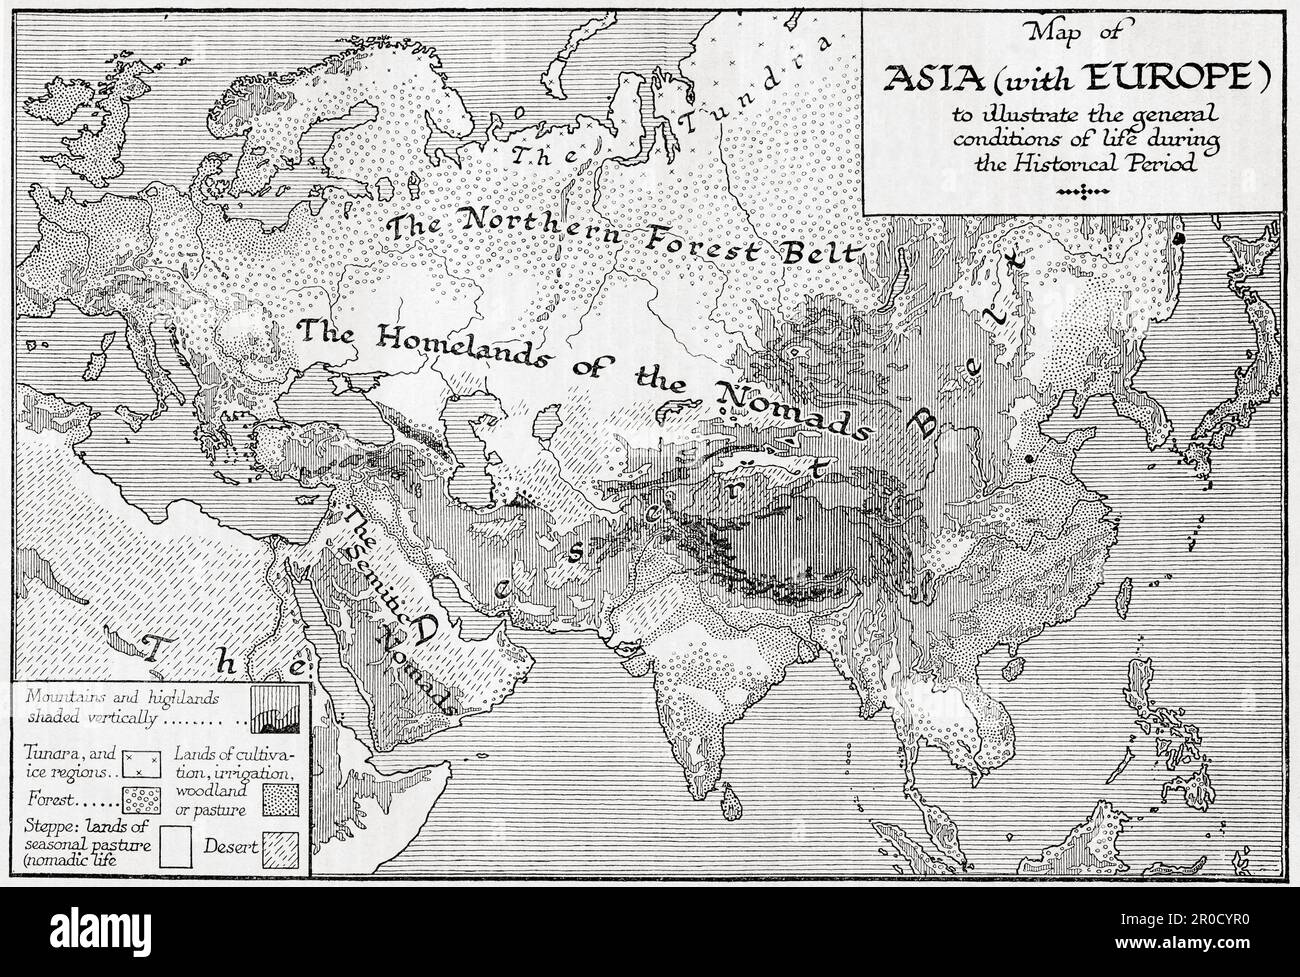 Karte von Asien mit Europa zur Veranschaulichung der allgemeinen Lebensbedingungen während der historischen Zeit. Aus dem Buch Outline of History von H.G. Wells, veröffentlicht 1920. Stockfoto